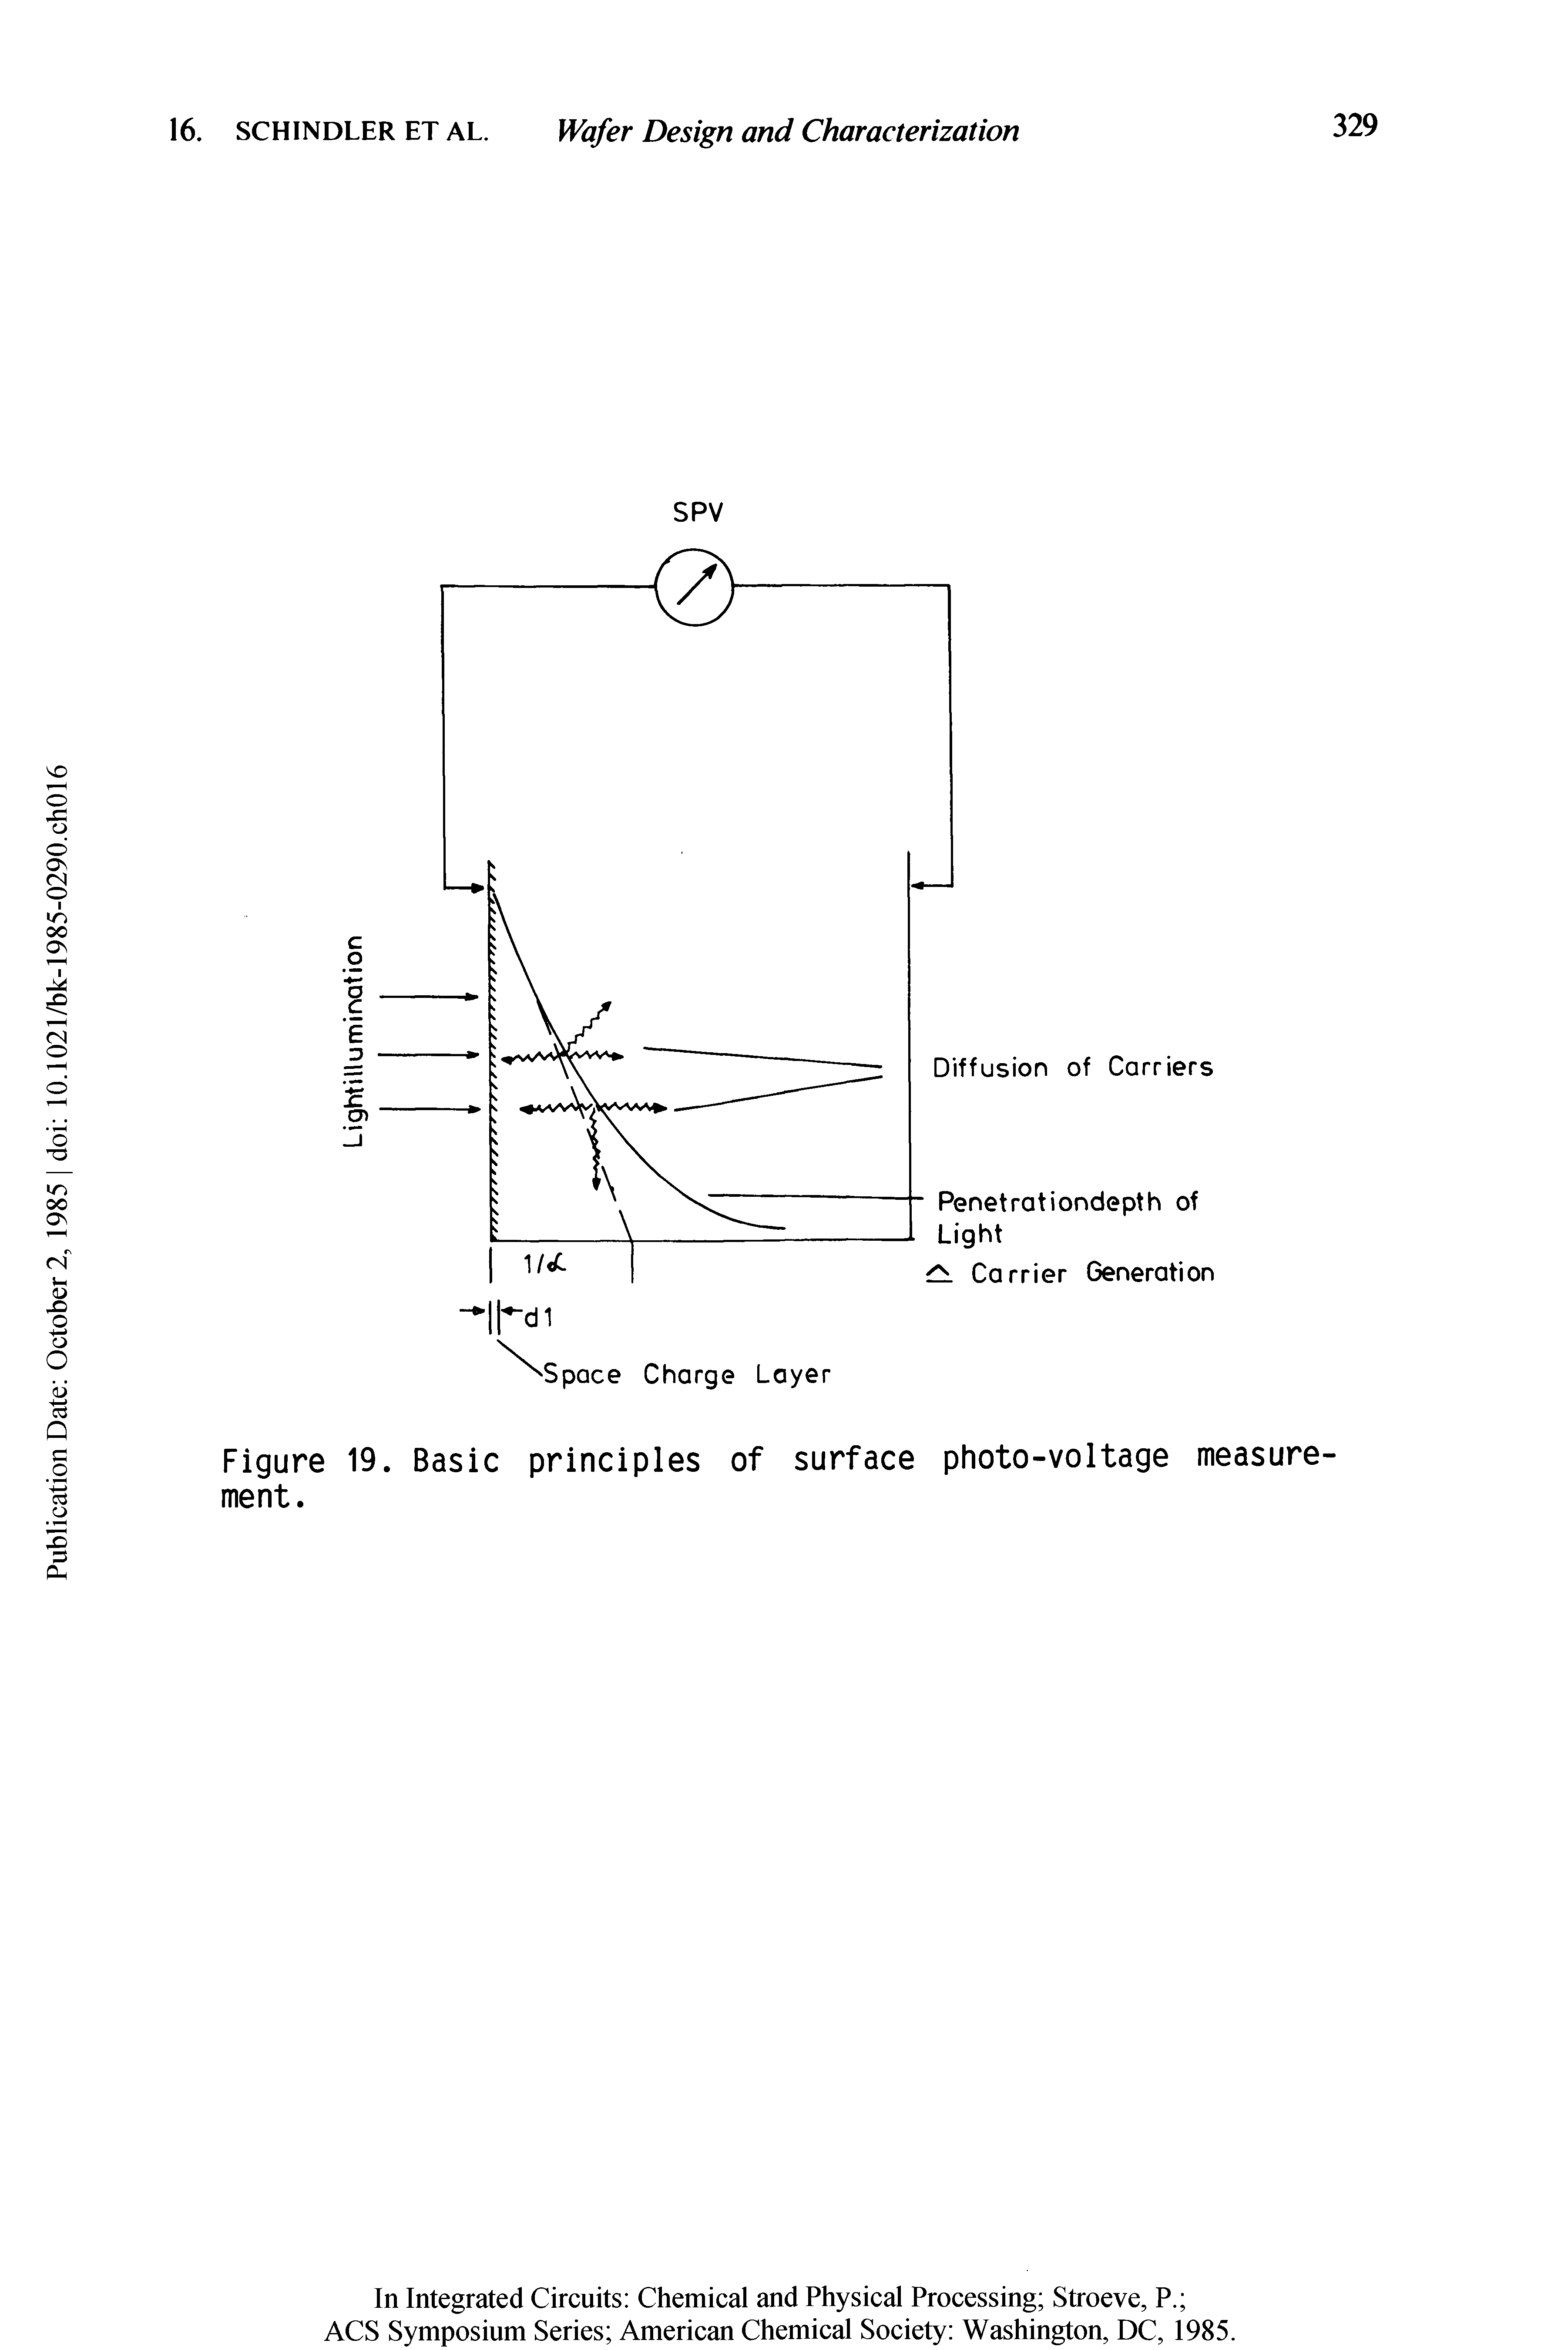 Figure 19. Basic principles of surface photo-voltage measurement.